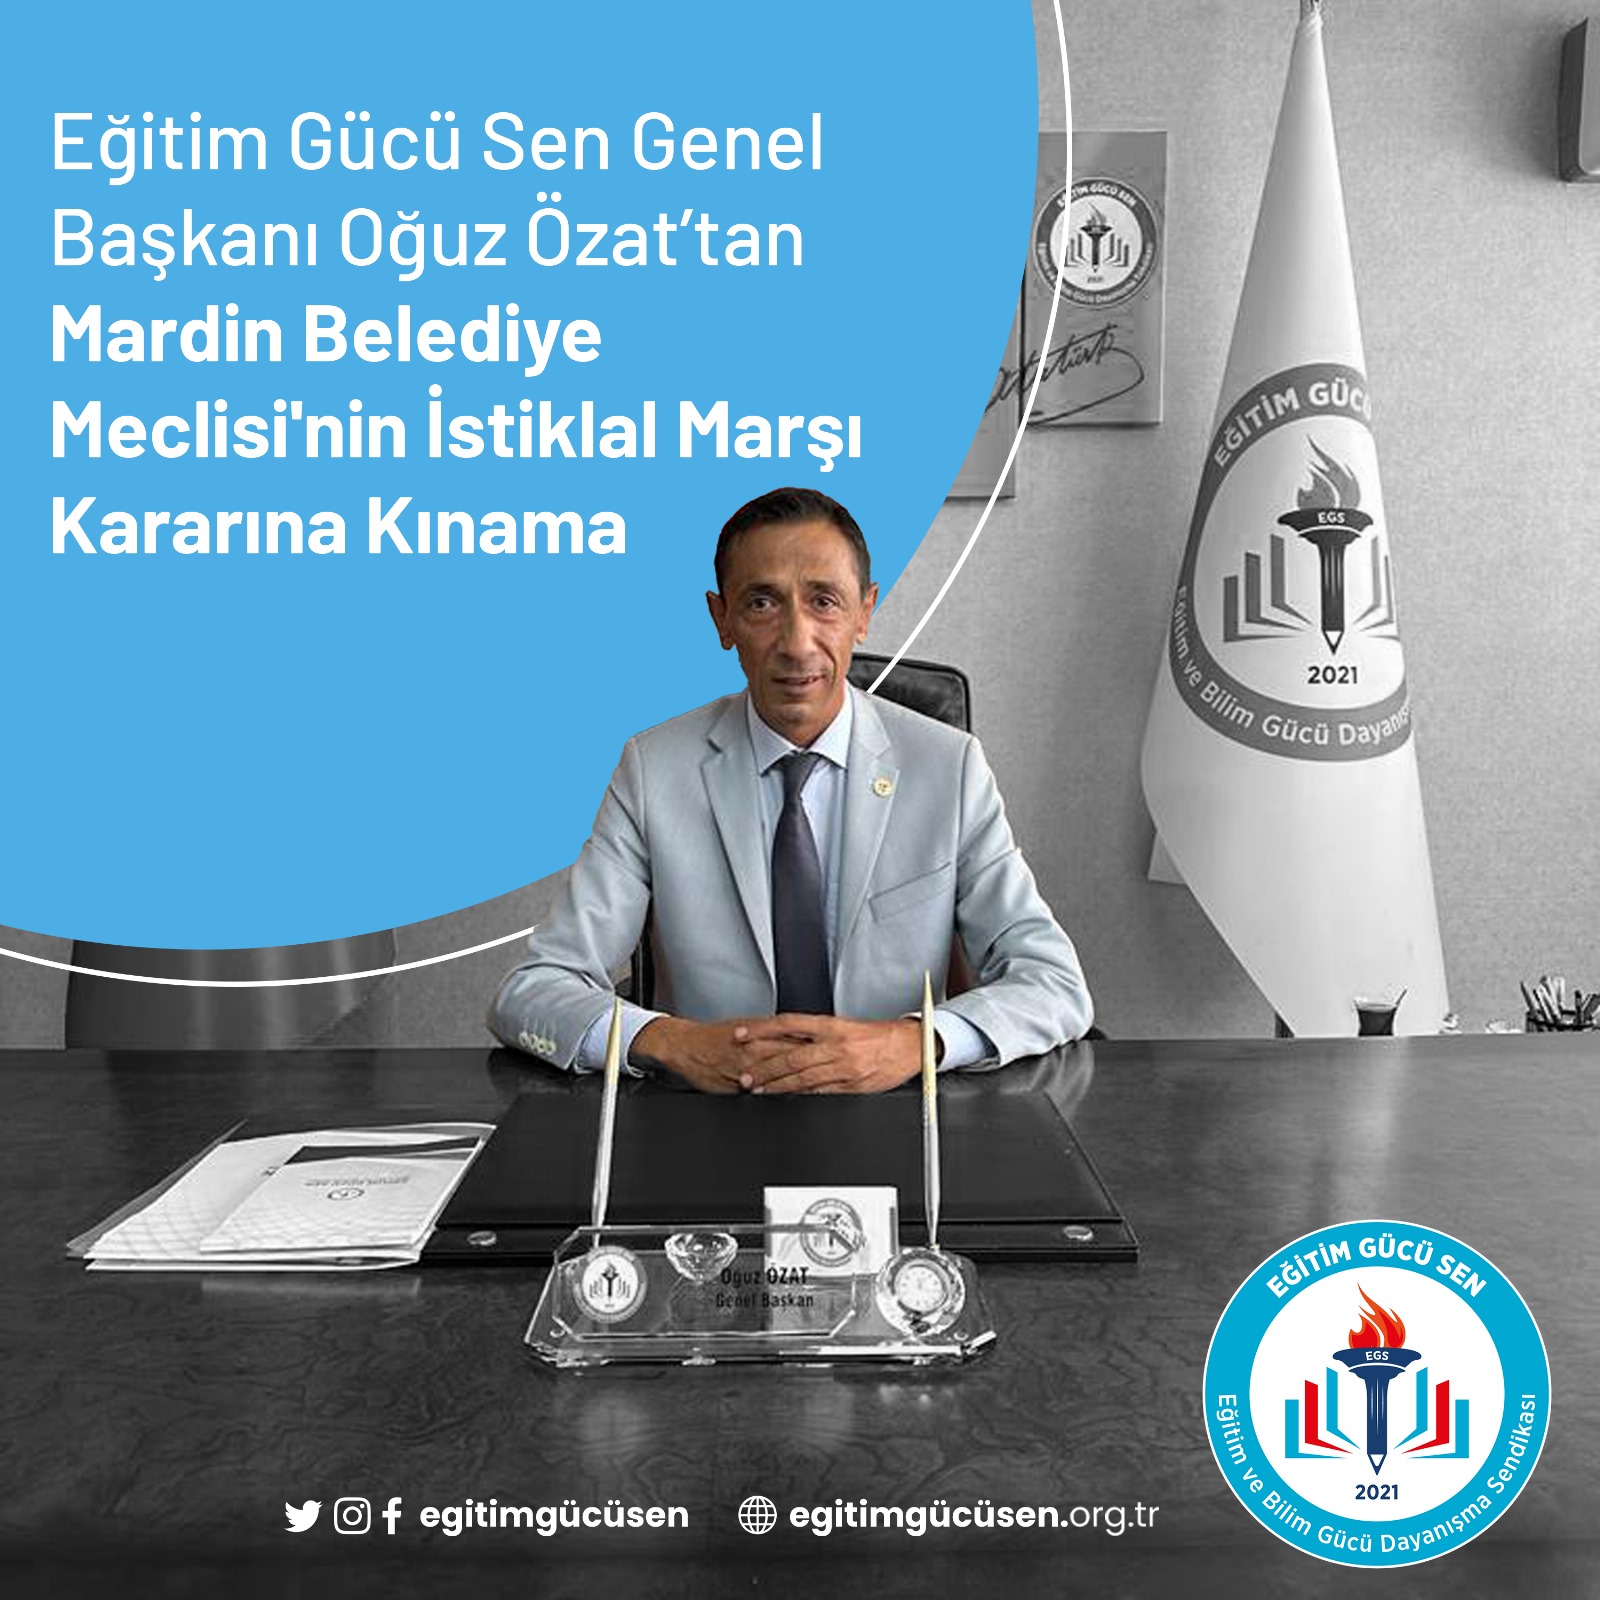 Eğitim Gücü Sen Genel Başkanı Oğuz Özat’tan Mardin Belediye Meclisi’nin İstiklal Marşı Kararına Kınama